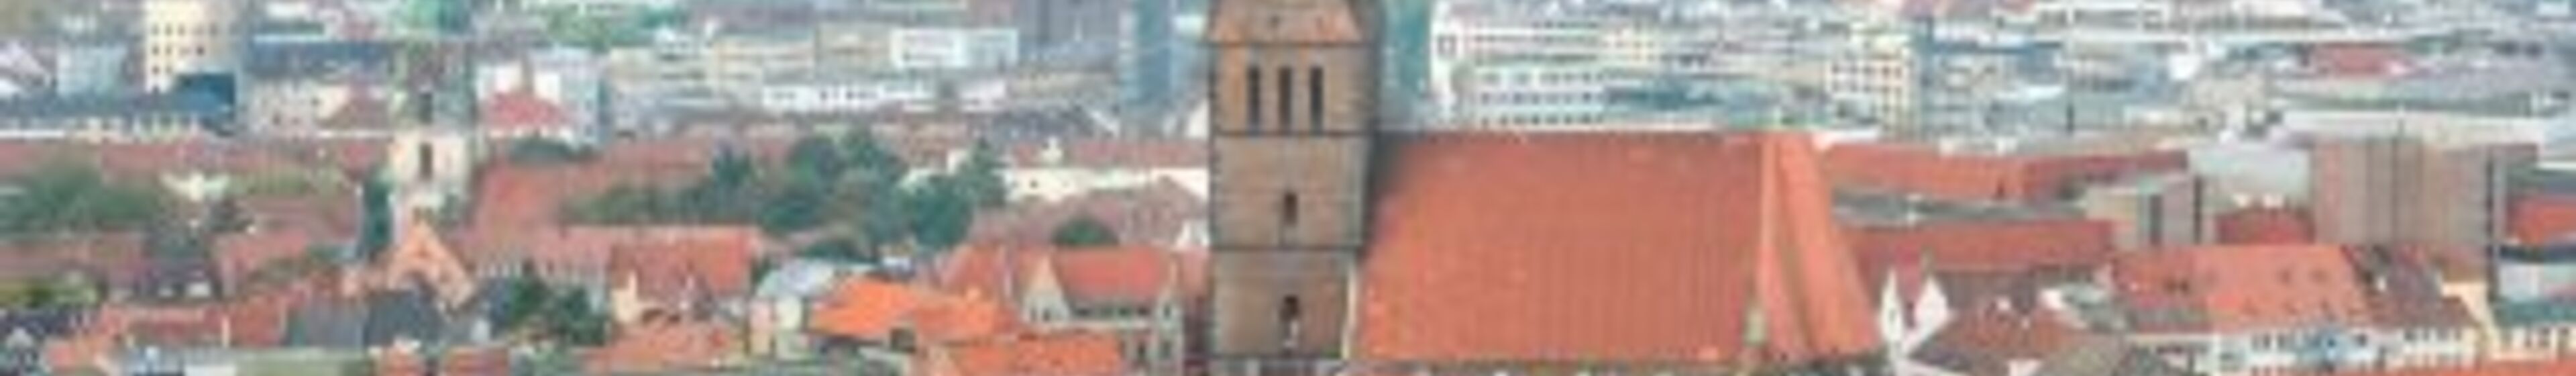 Hannover Marktkirche geänderte Größe